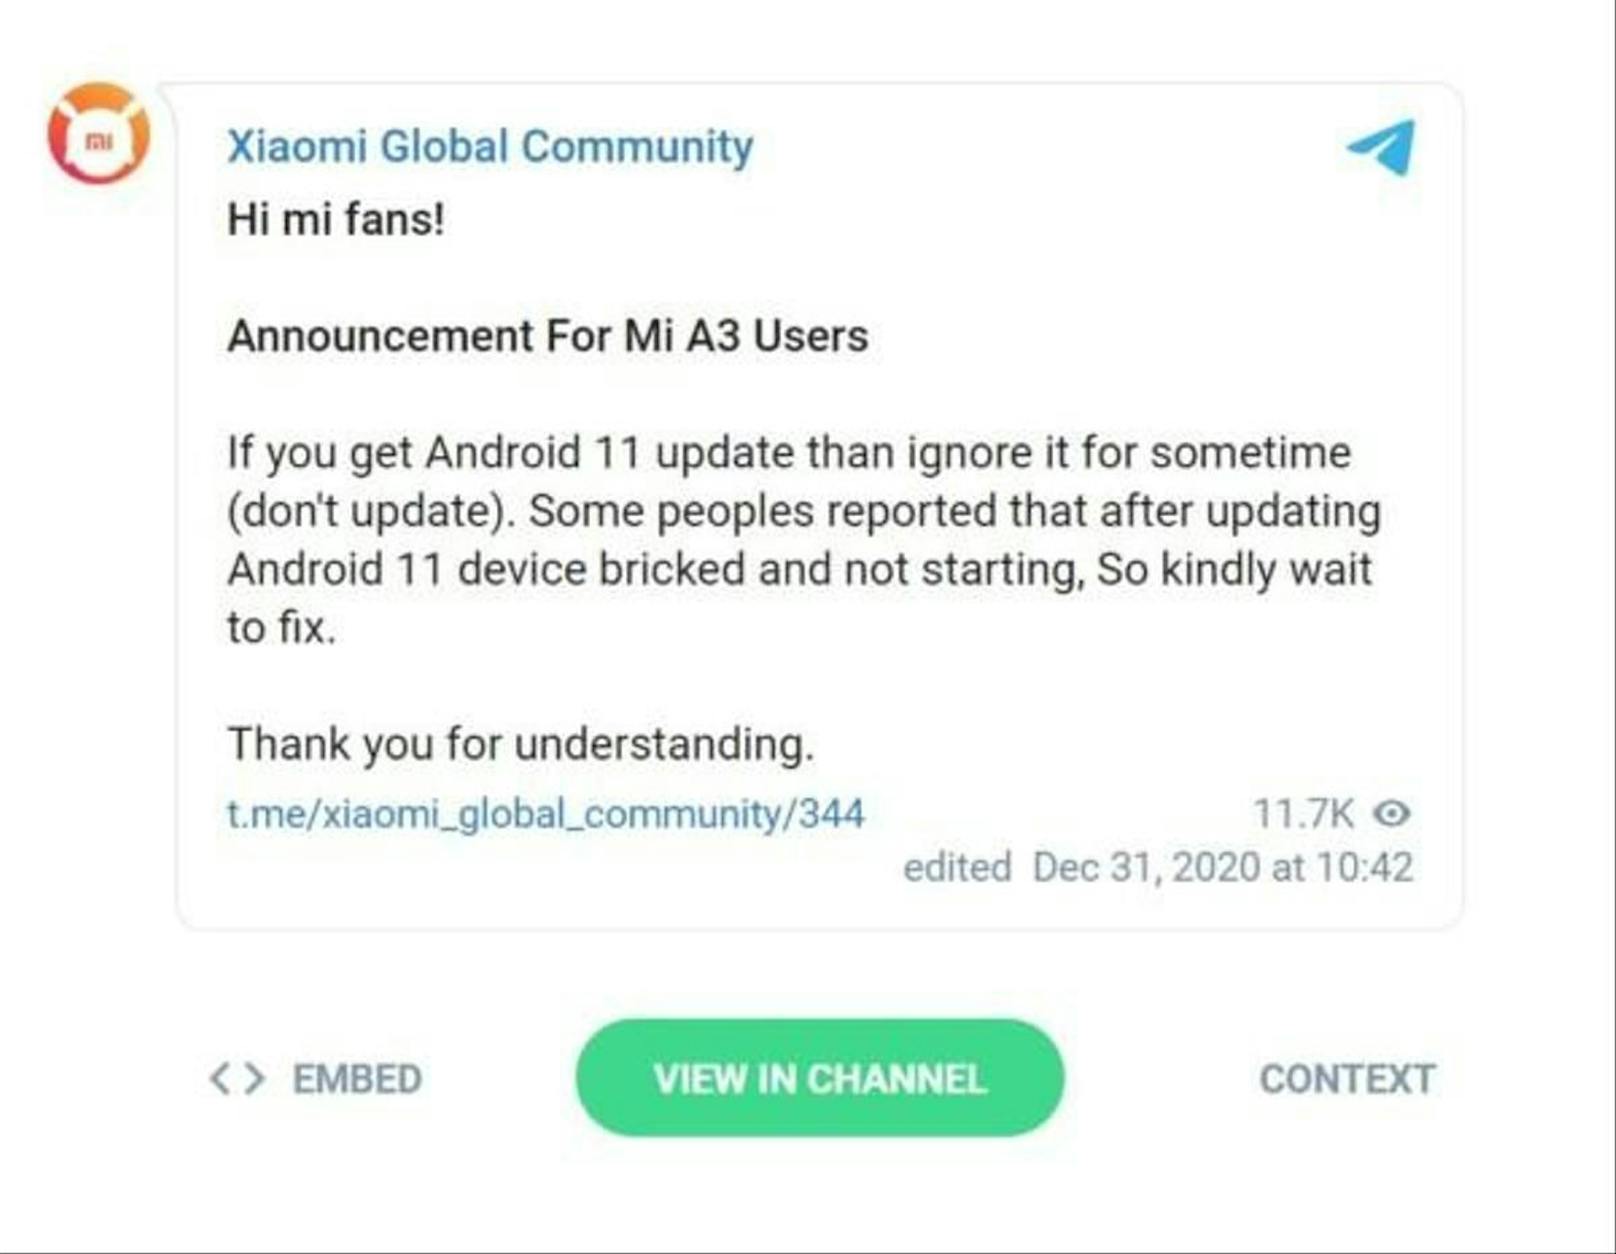 So warnt Xiaomi, dass die Update-Meldung ignoriert werden soll. Man arbeite an einer Lösung.